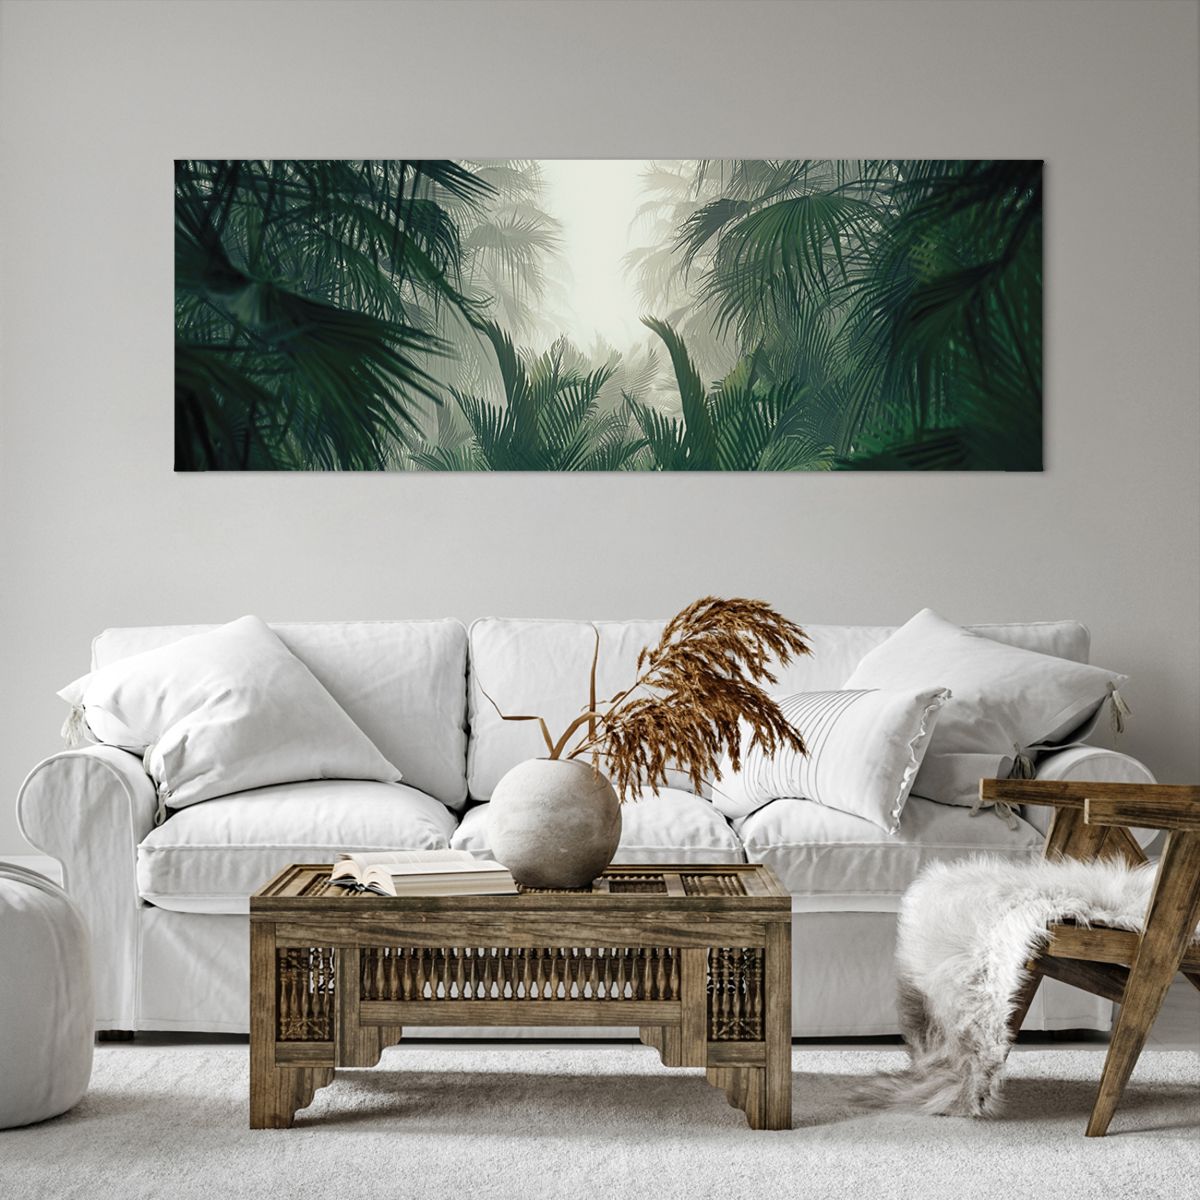 Obrazy na płótnie Dżungla, Obrazy na płótnie Palma Kokosowa, Obrazy na płótnie Las, Obrazy na płótnie Natura, Obrazy na płótnie Las Tropikalny